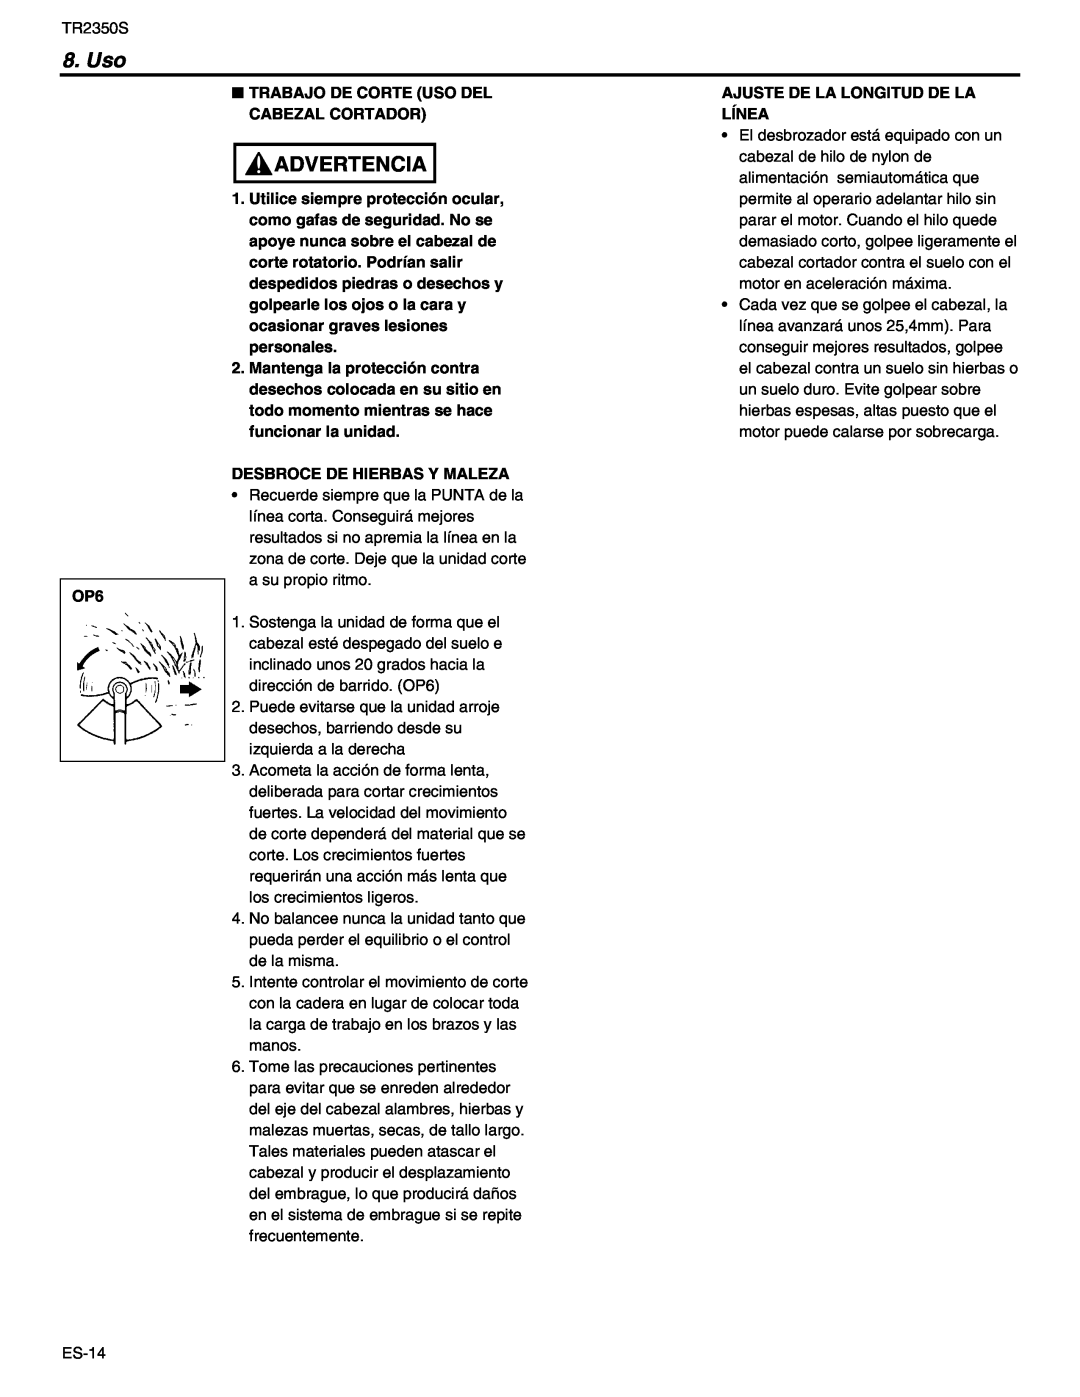 RedMax TR2350S manual Advertencia, Trabajo De Corte Uso Del Cabezal Cortador, Desbroce De Hierbas Y Maleza 